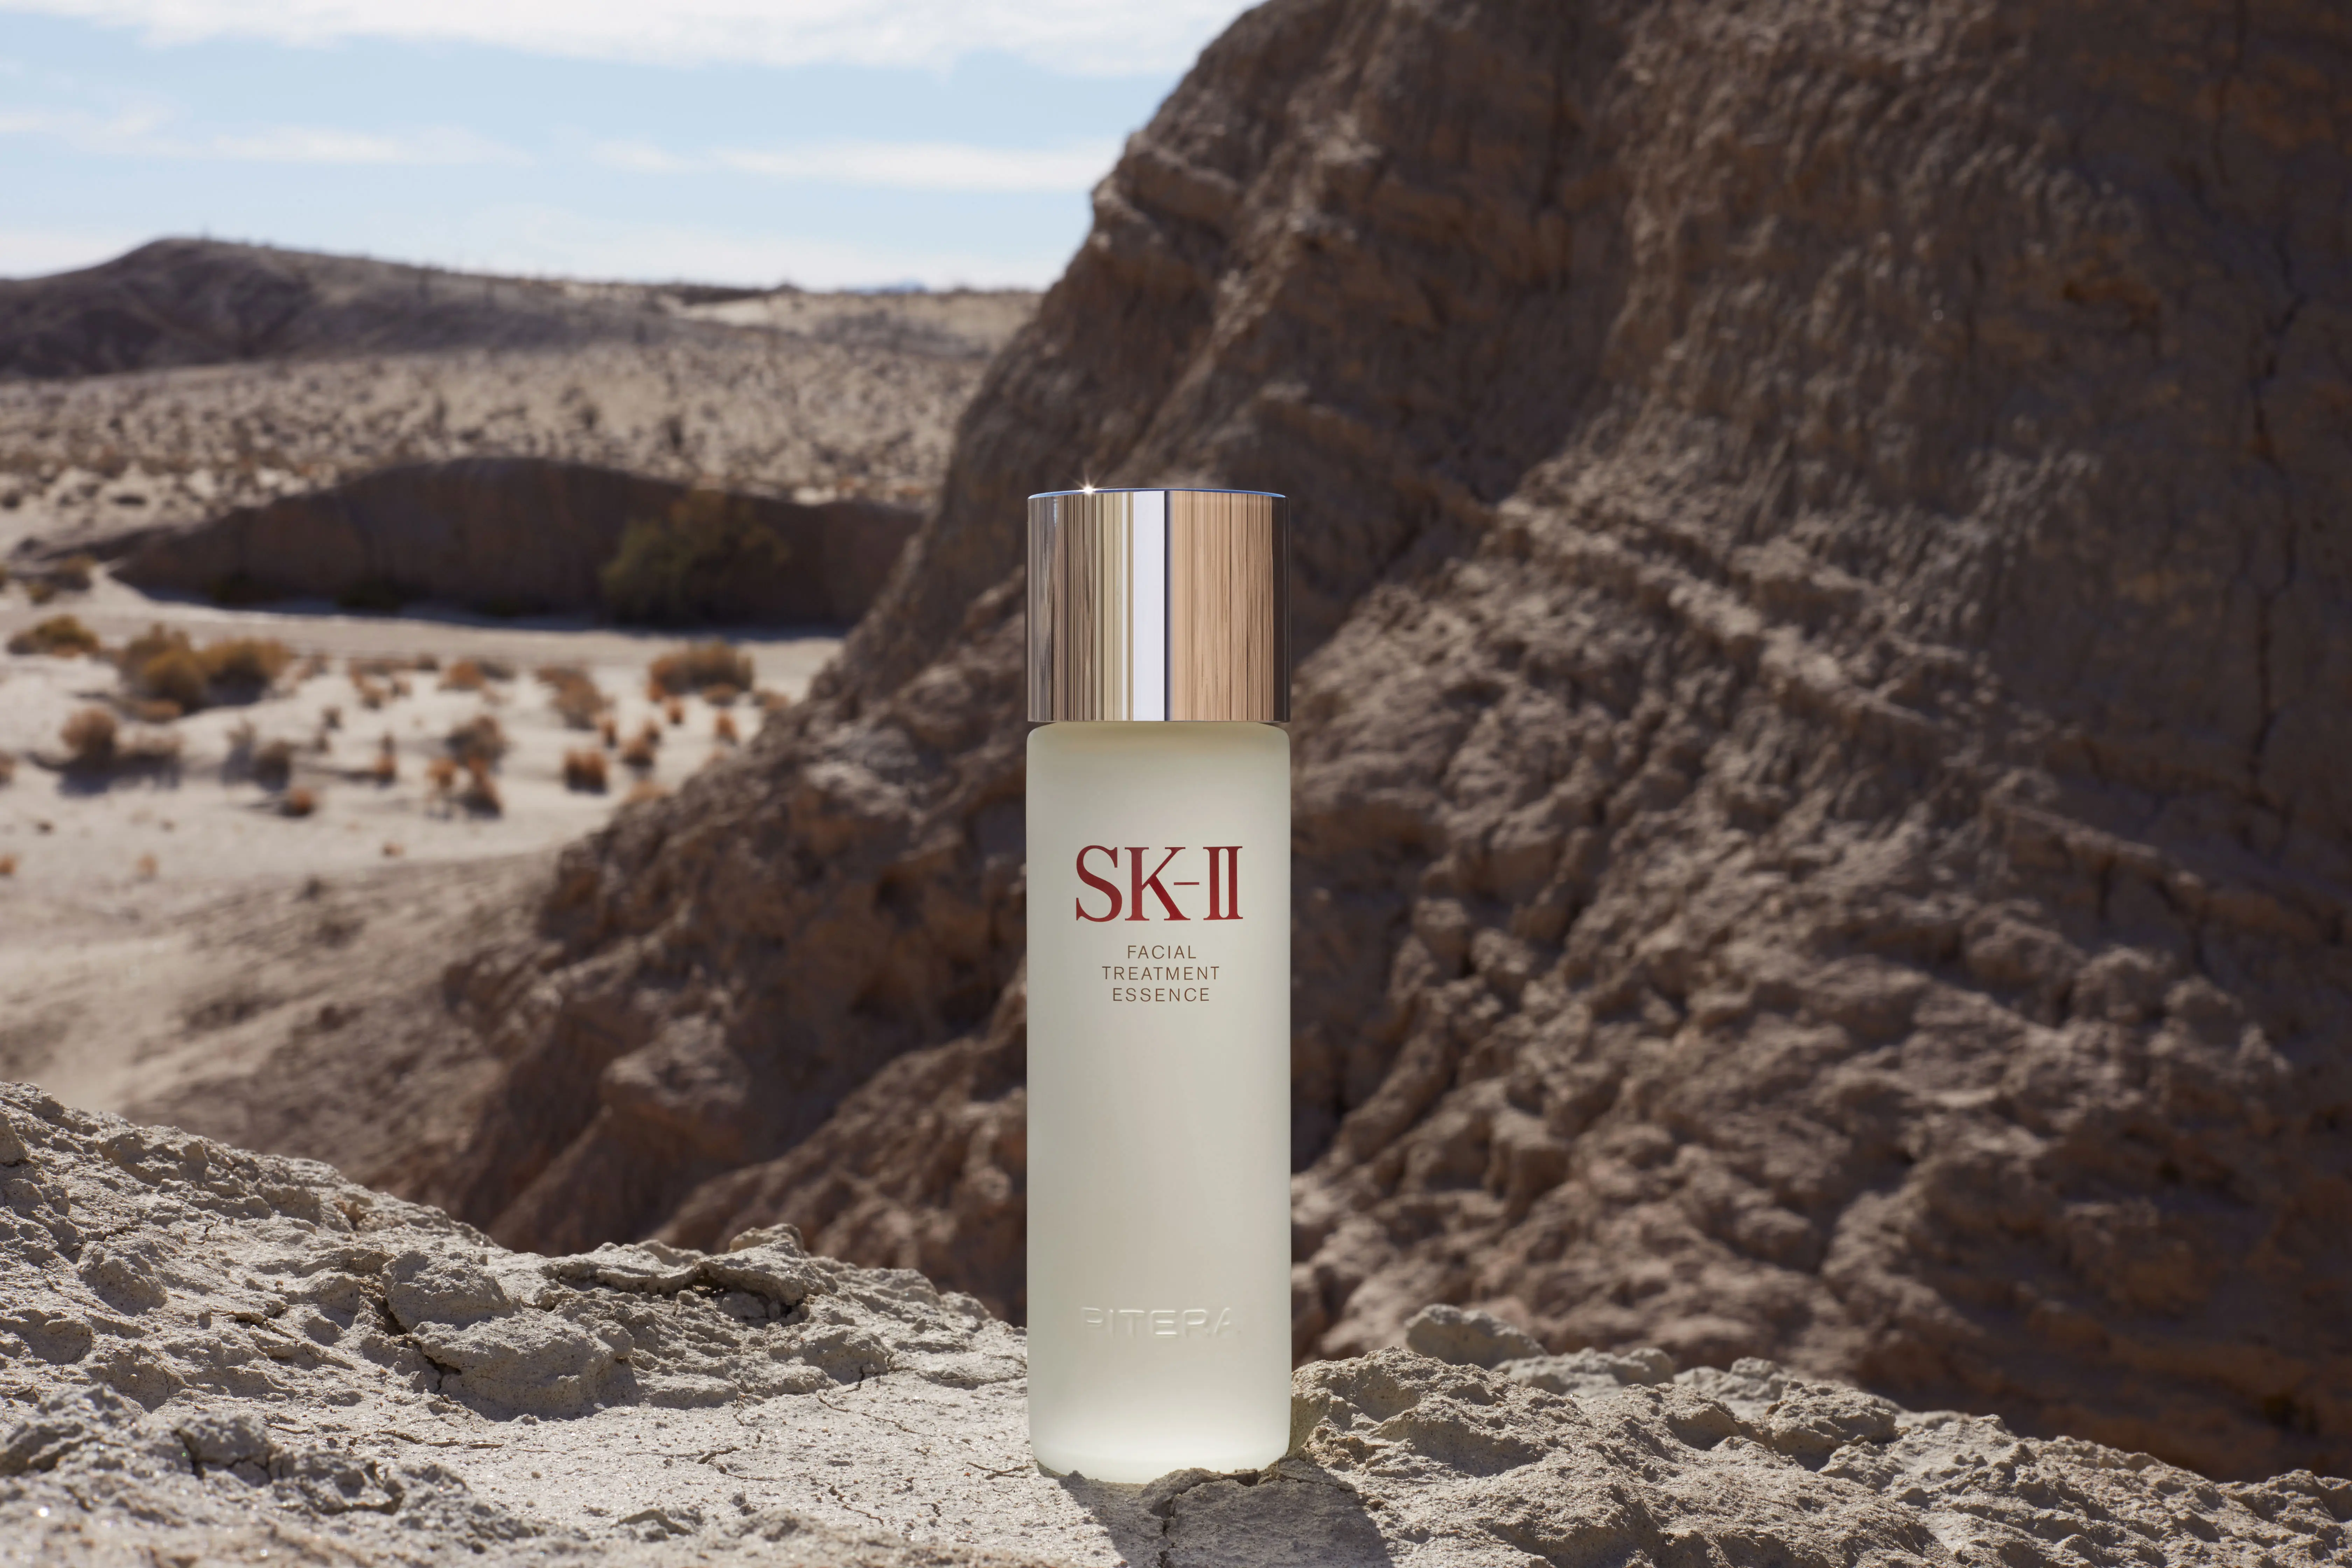 SK-II Treatment Essence dapat memperbaiki kulit saat traveling di tempat-tempat ekstrem. (SK-II)